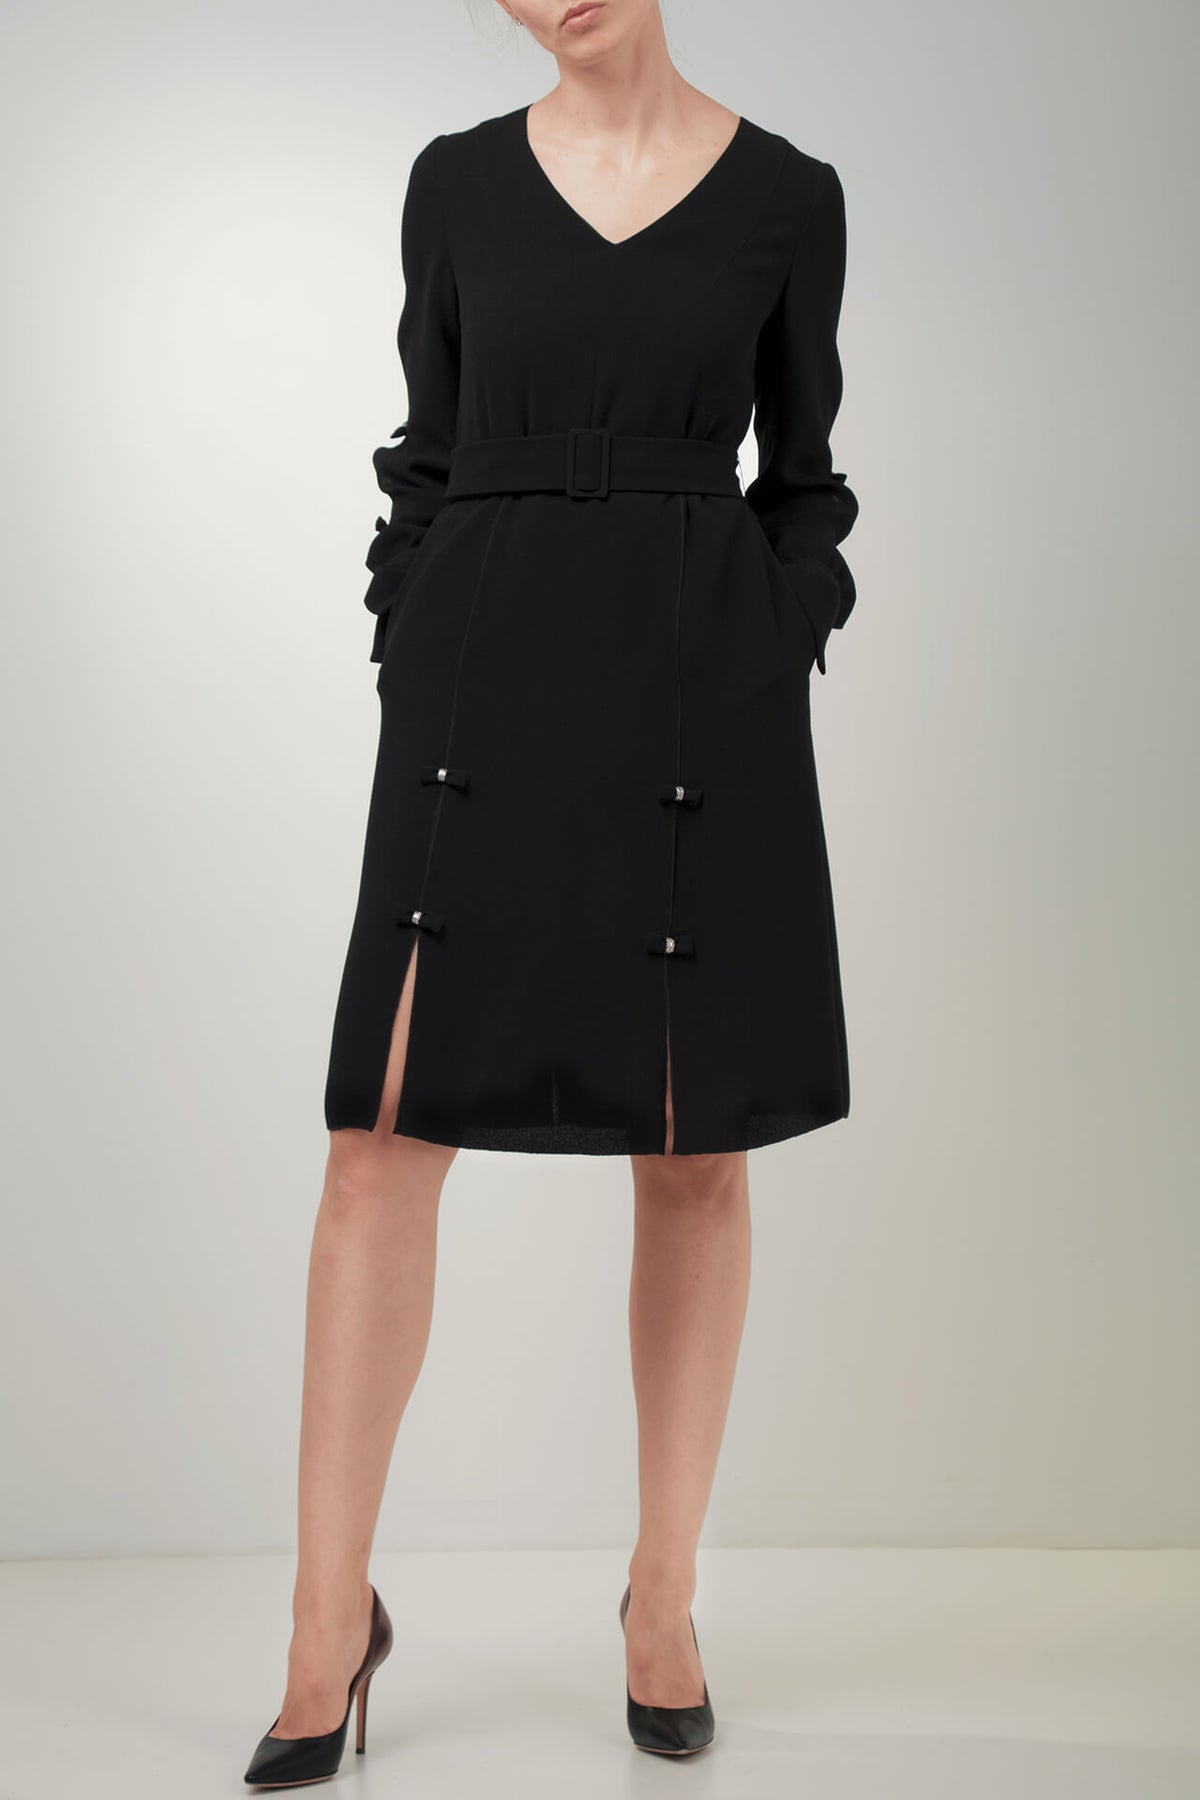 Black long-sleeve crepe dress | FG atelier